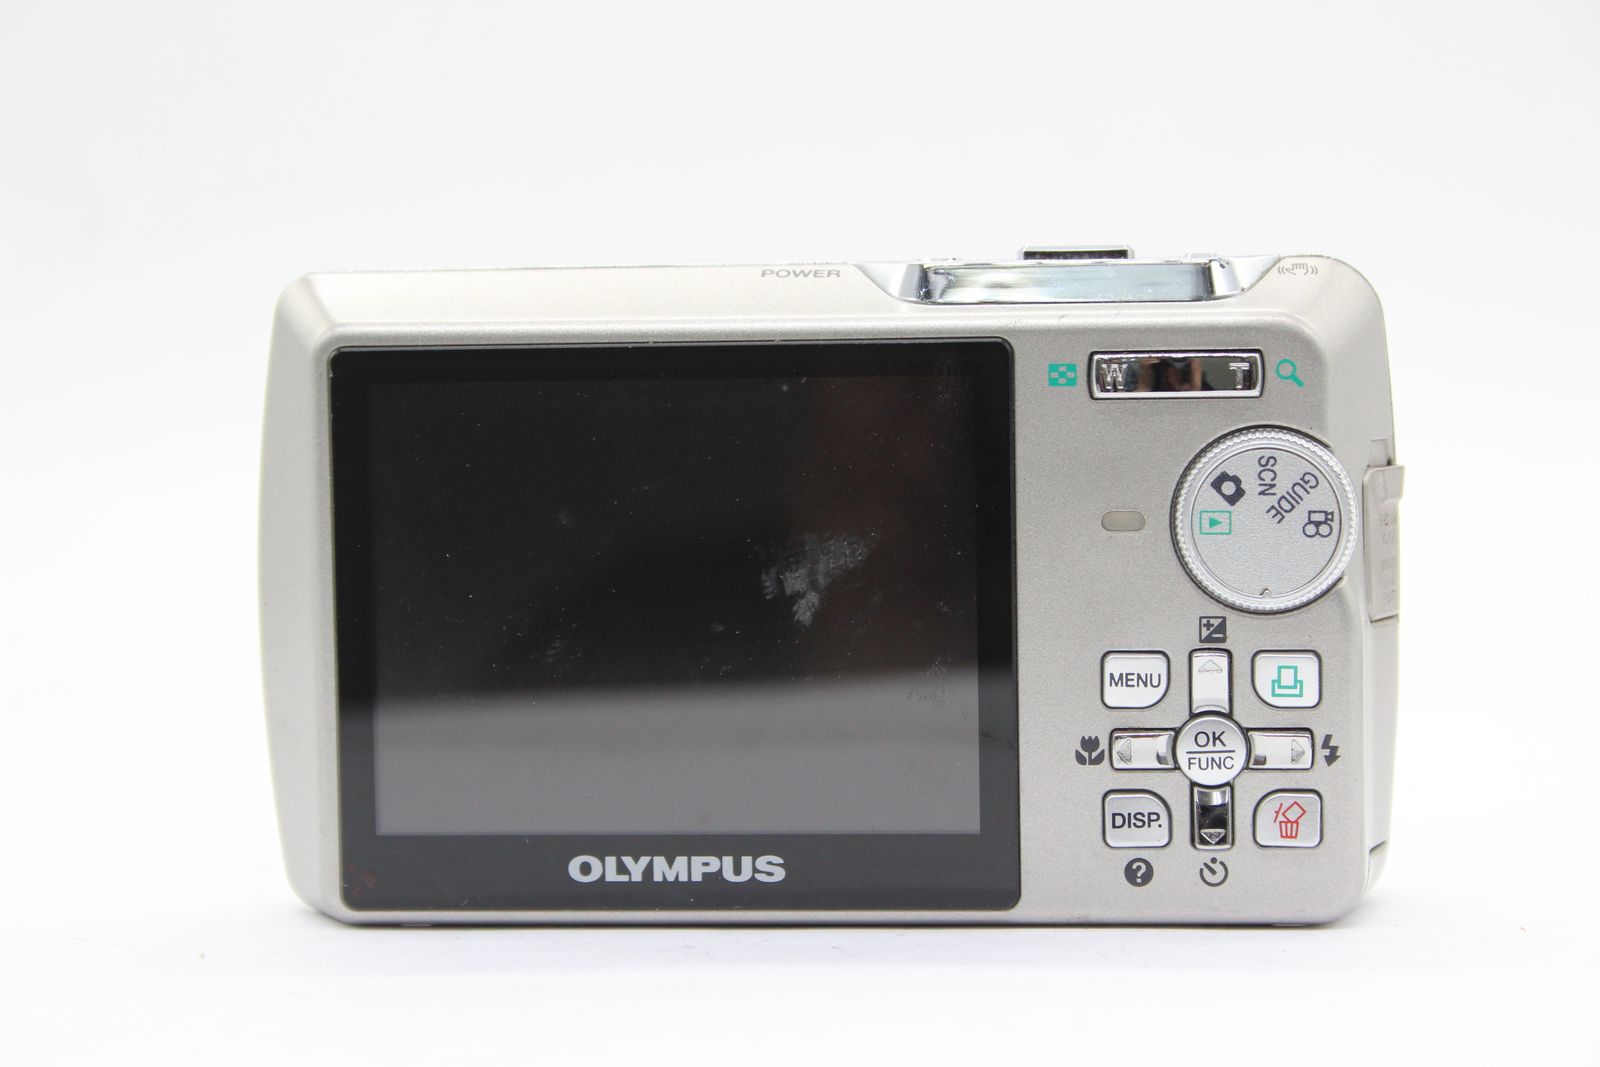 【返品保証】 オリンパス Olympus μ750 5x バッテリー付き コンパクトデジタルカメラ s2876